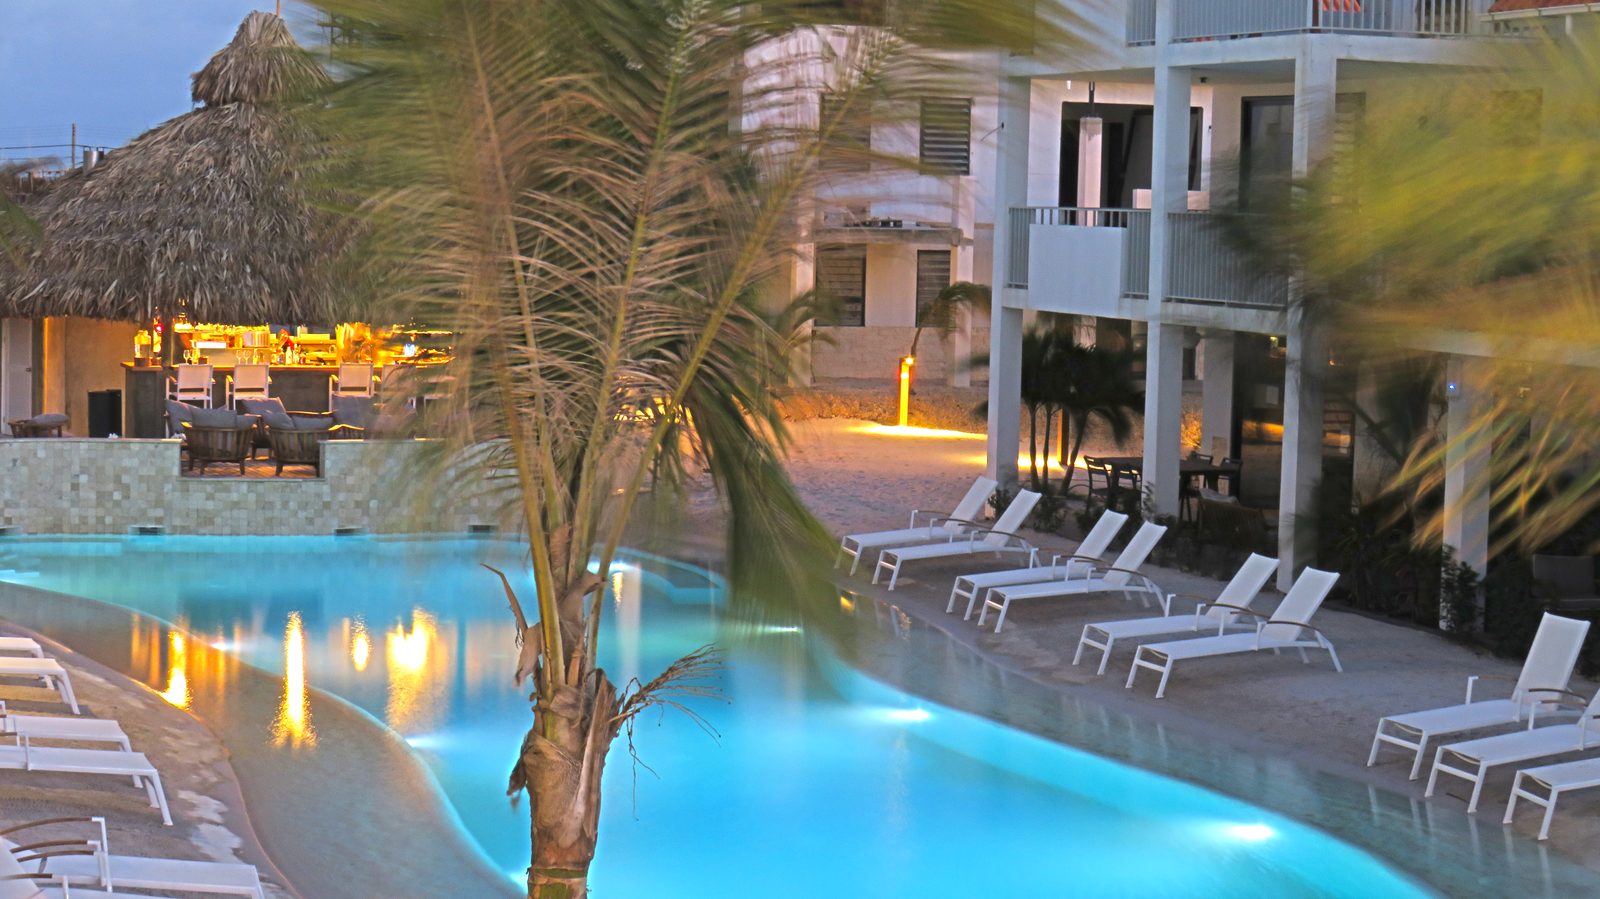 Resort Bonaire heeft op het resort verschillende faciliteiten waar u als gast gebruik van kunt maken. Huur een snorkelset of ga bij ons zwemmen!